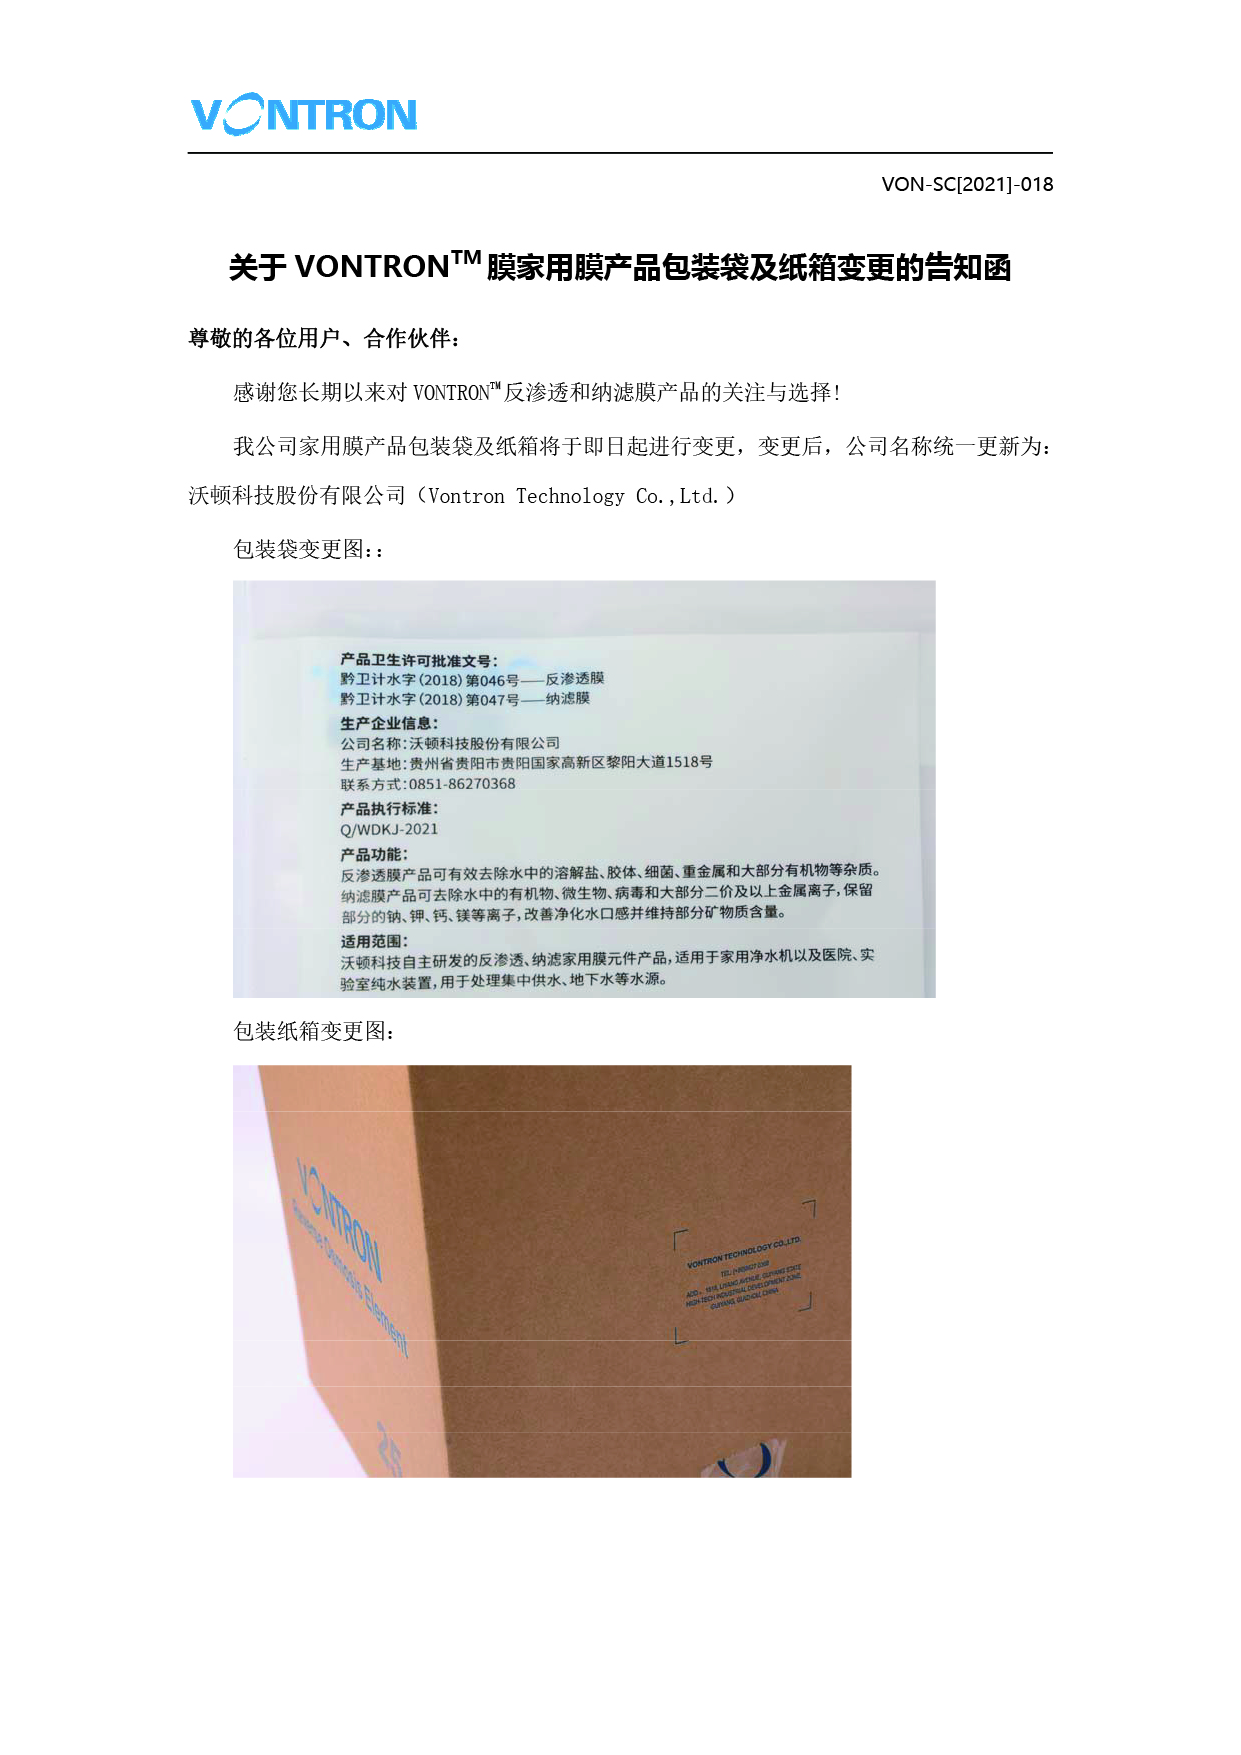 关于jinnianhui67膜家用膜产品包装袋及纸箱变更的告知函